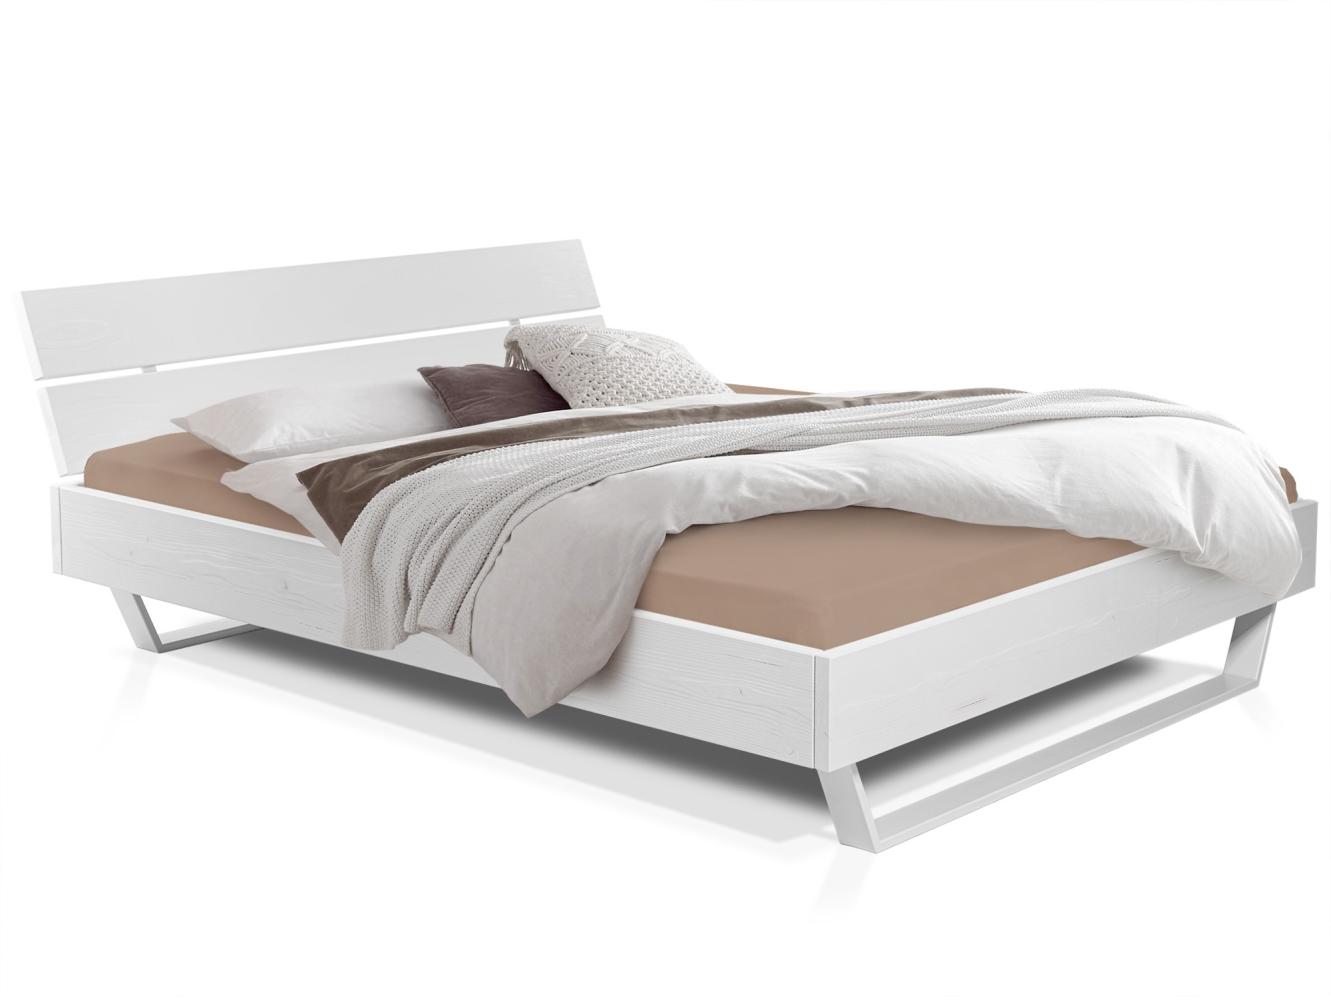 Möbel-Eins LUKY Kufenbett mit Kopfteil, Material Massivholz, Fichte massiv, Kufen weiß weiss 140 x 220 cm Bild 1